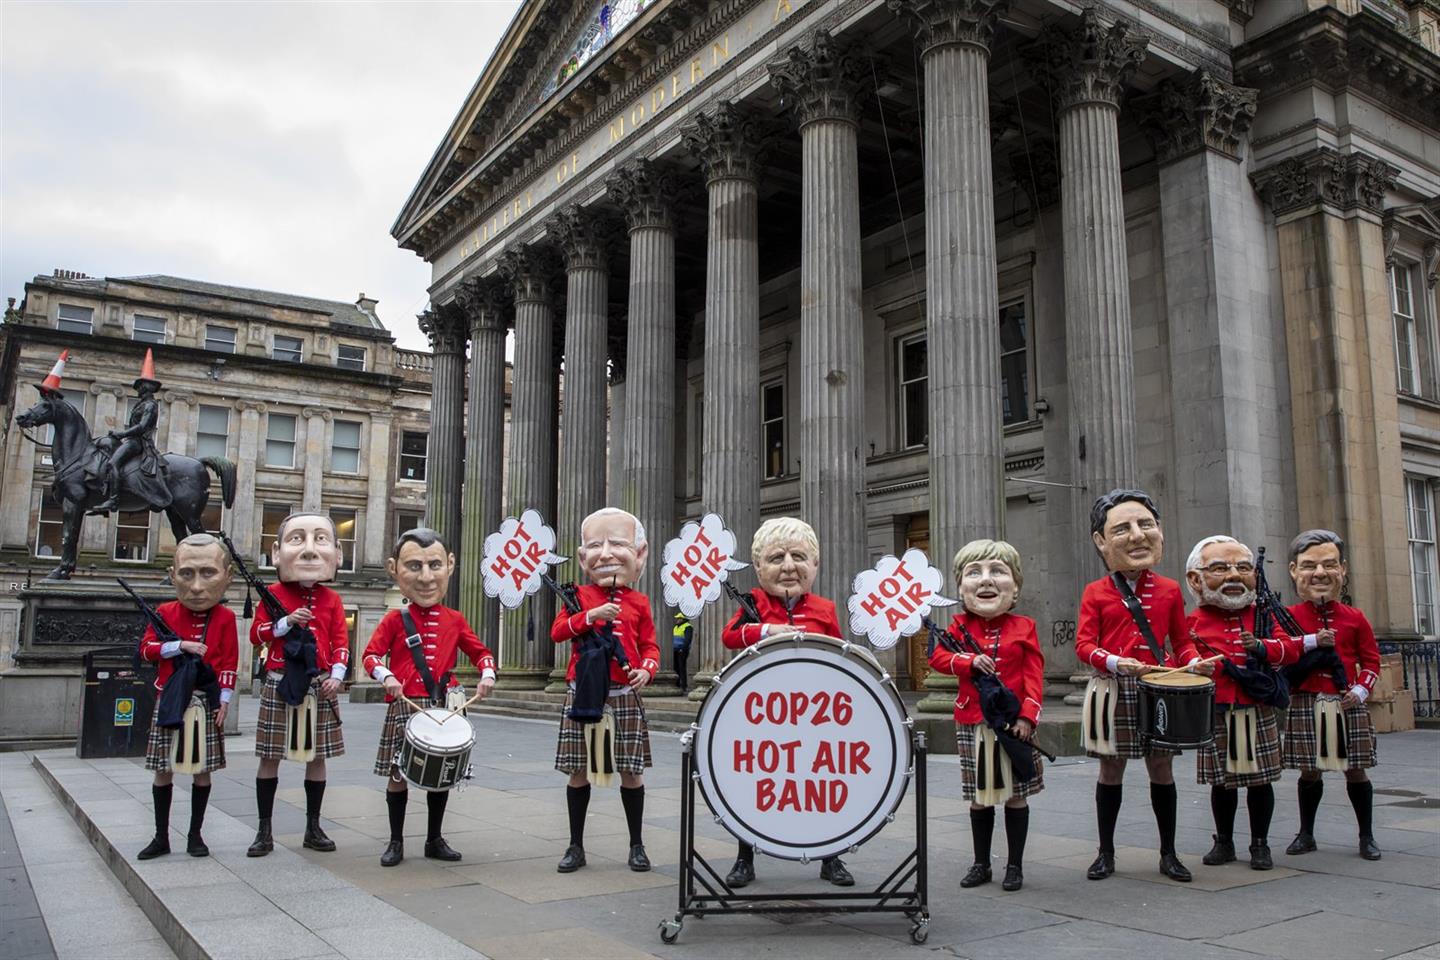 Bij de start van de VN-klimaattop in Glasgow eisen actievoerders van Oxfam Novib dat wereldleiders niet met 'gebakken lucht' oplossingen komen maar met concrete plannen om de klimaatcrisis aan te pakken. Photocredits Oxfam